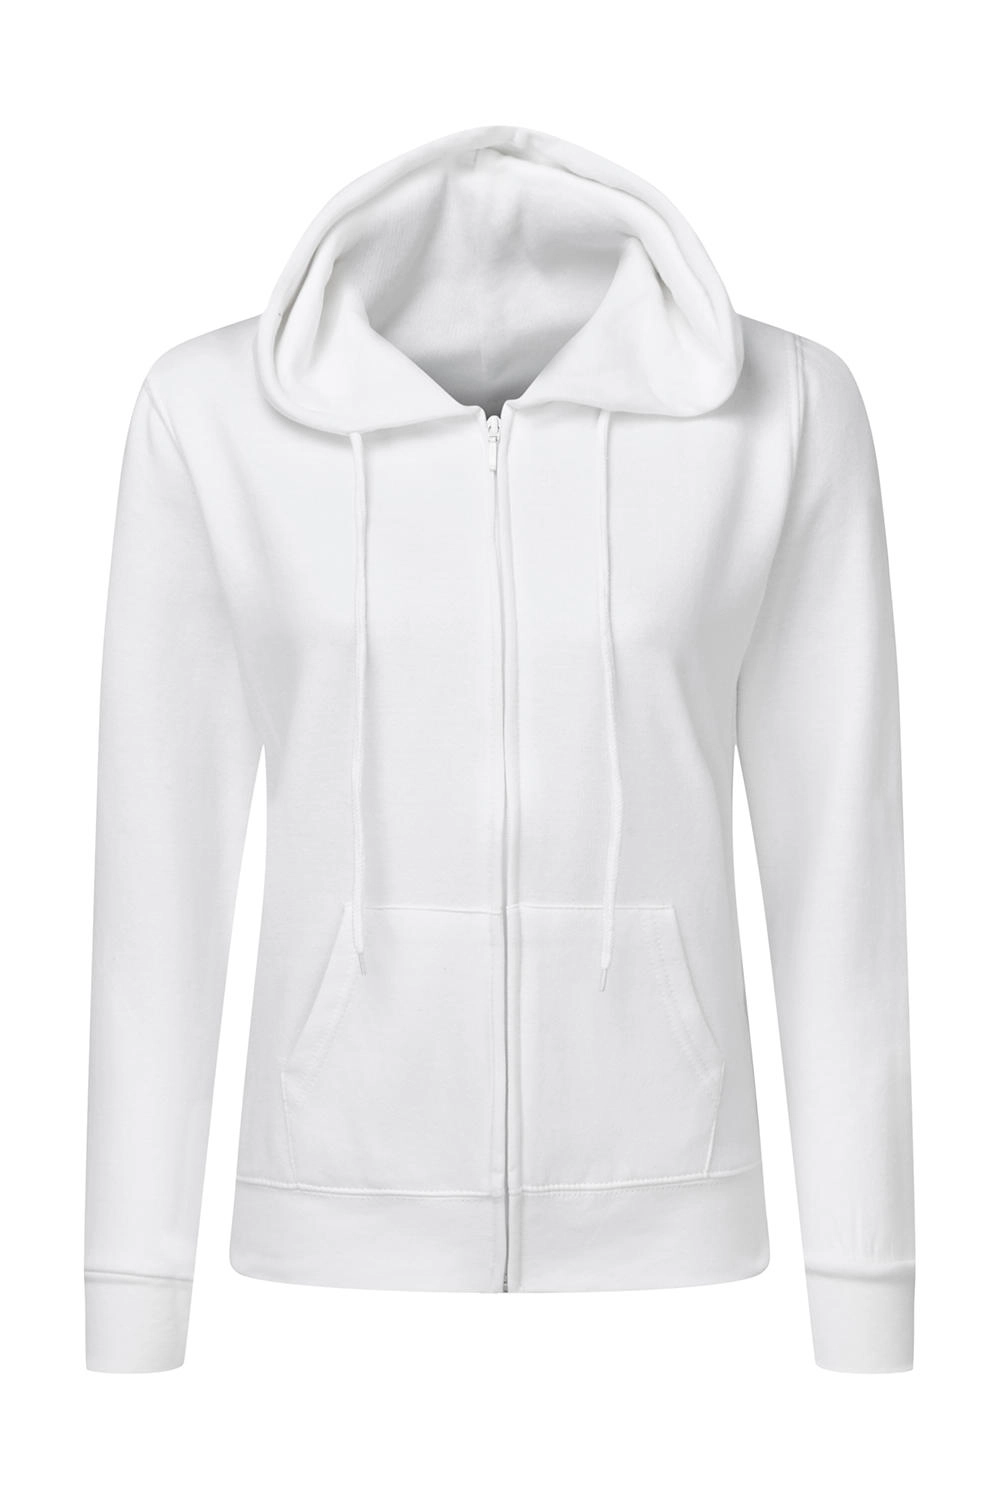 Hooded Full Zip Women zum Besticken und Bedrucken in der Farbe White mit Ihren Logo, Schriftzug oder Motiv.